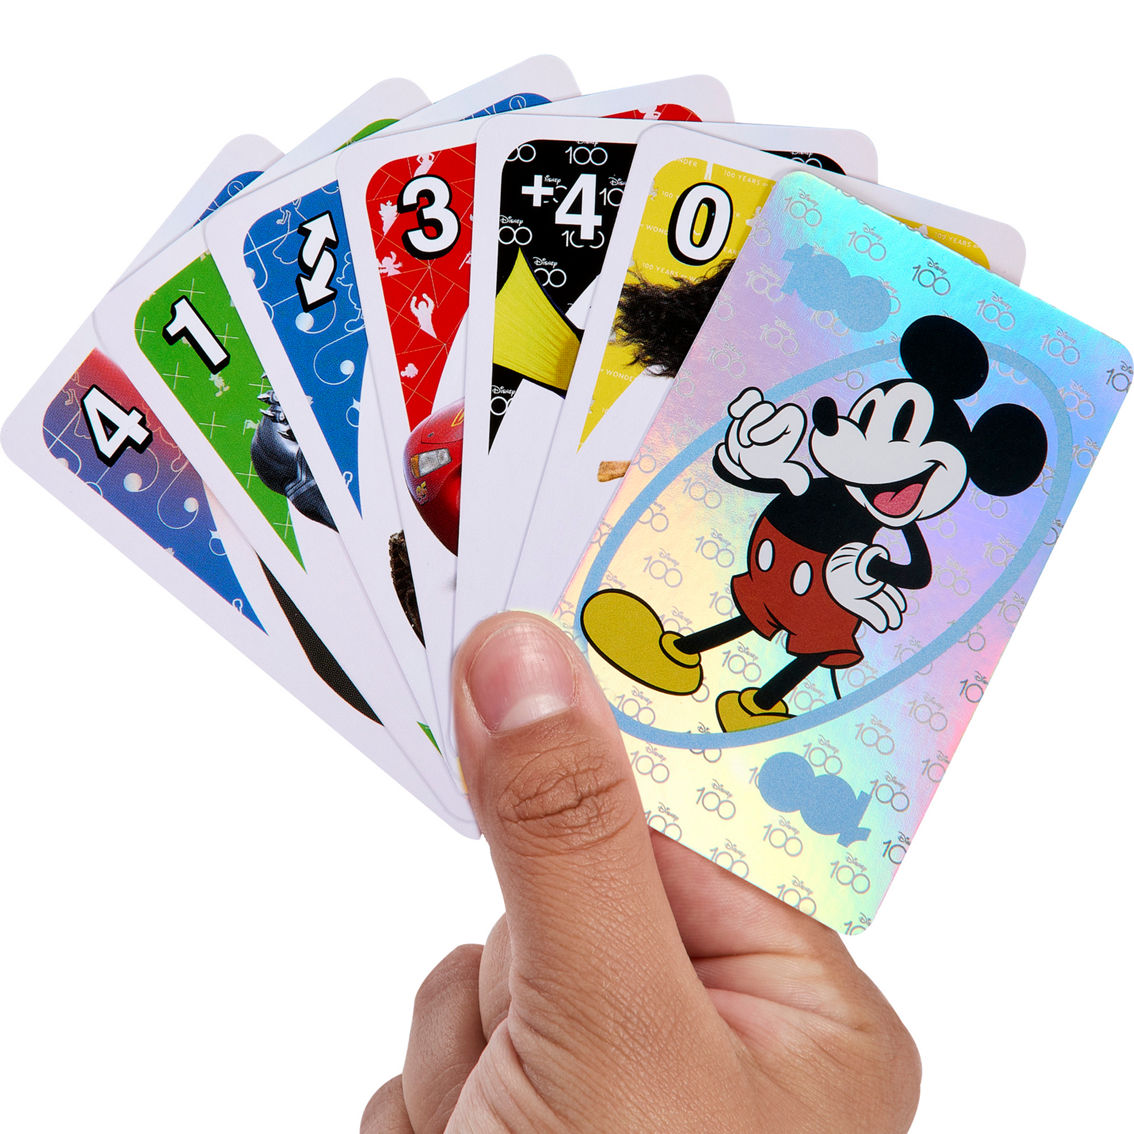 Mattel UNO Disney 100 Card Game - Image 6 of 6